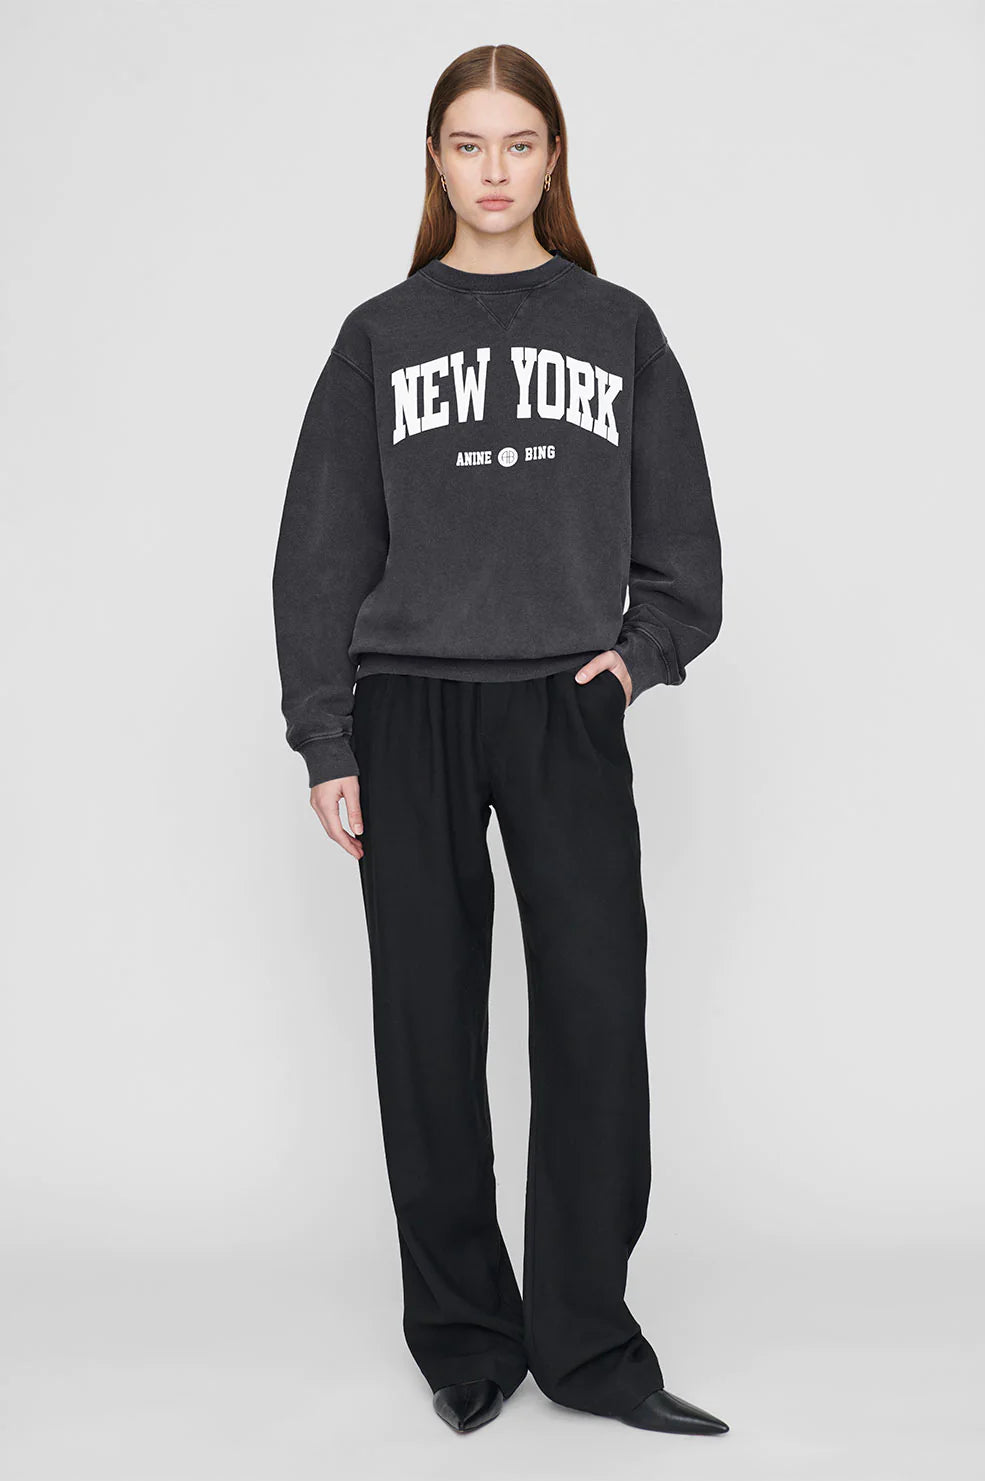 Anine Bing - Ramona Sweatshirt University of New York in Washed Black